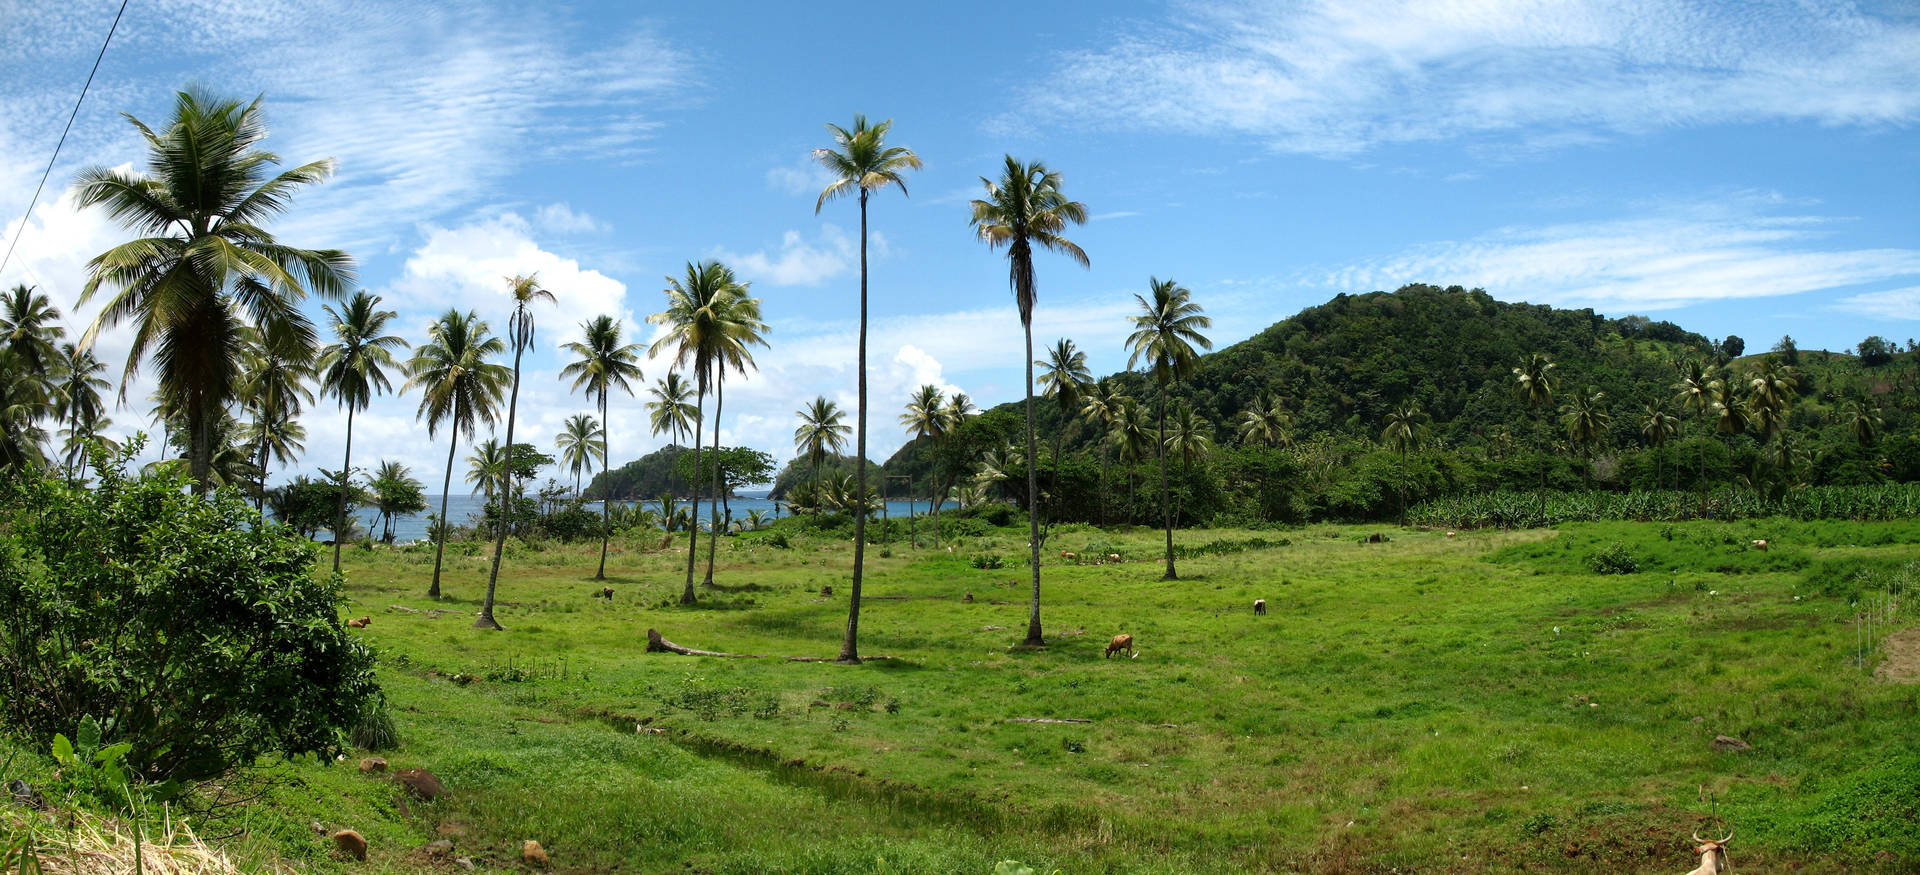 Sierra Leone Trees On Grass Field